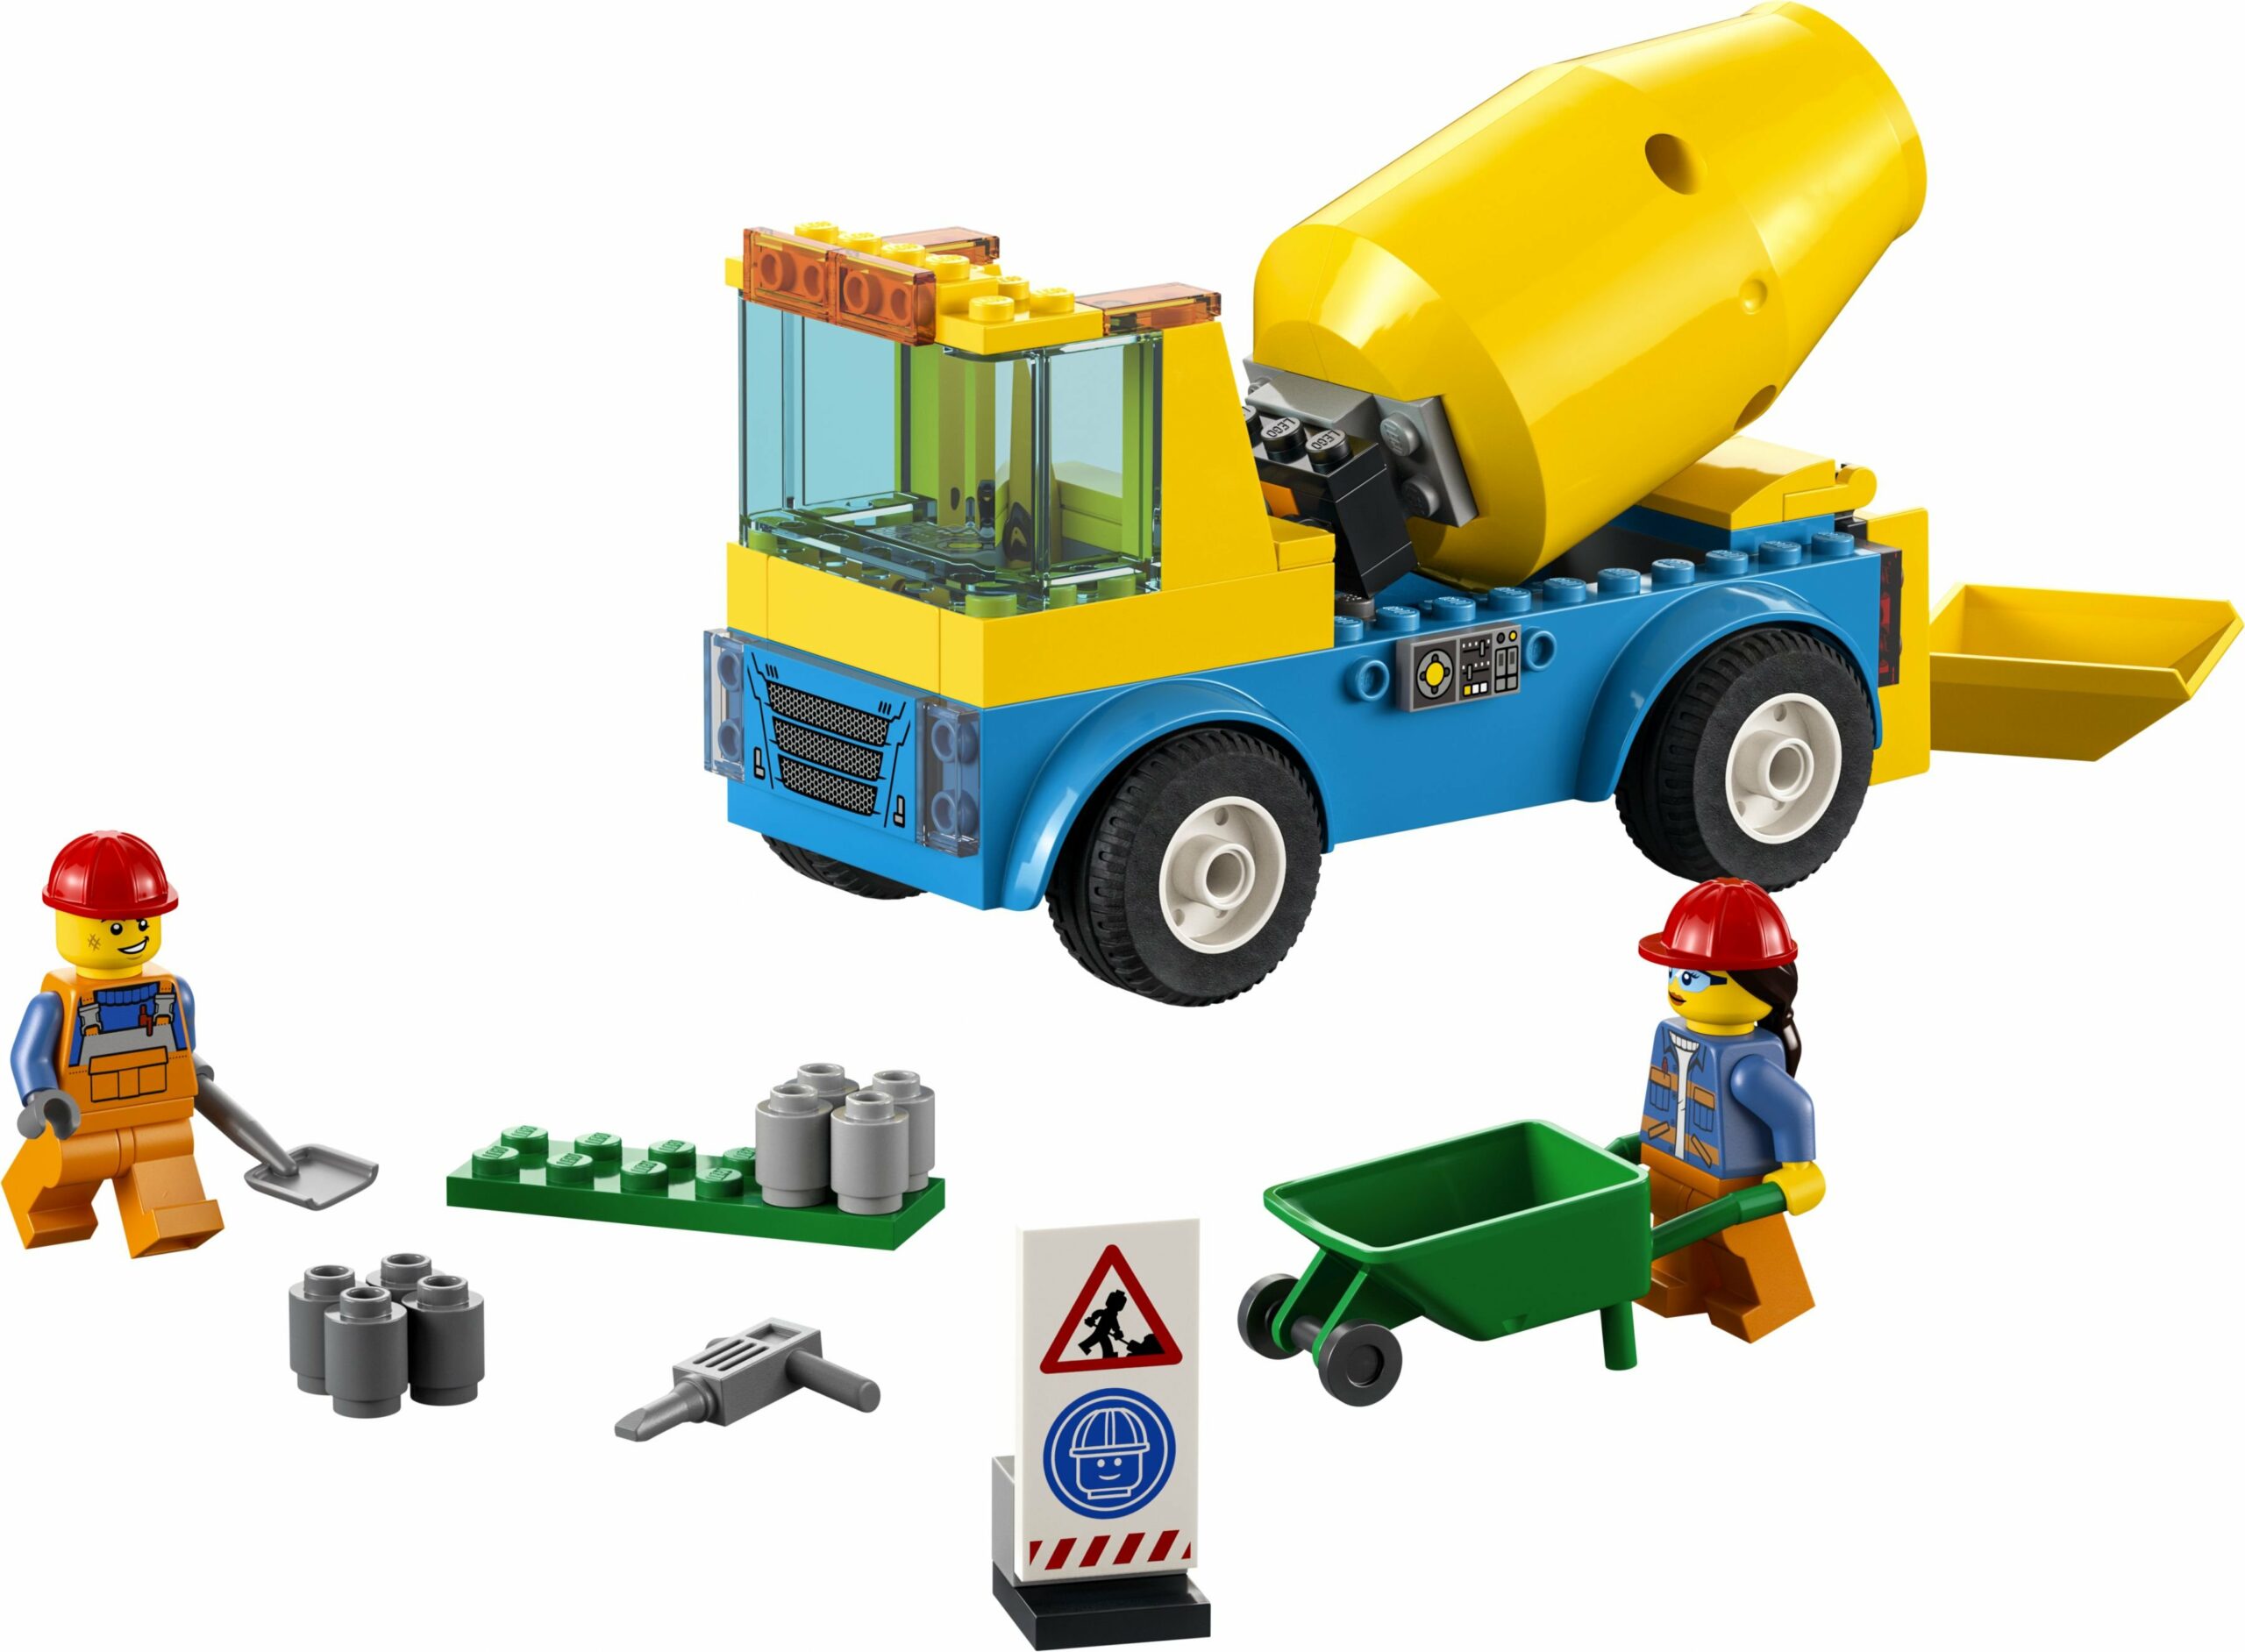 LEGO City - Betonmischer